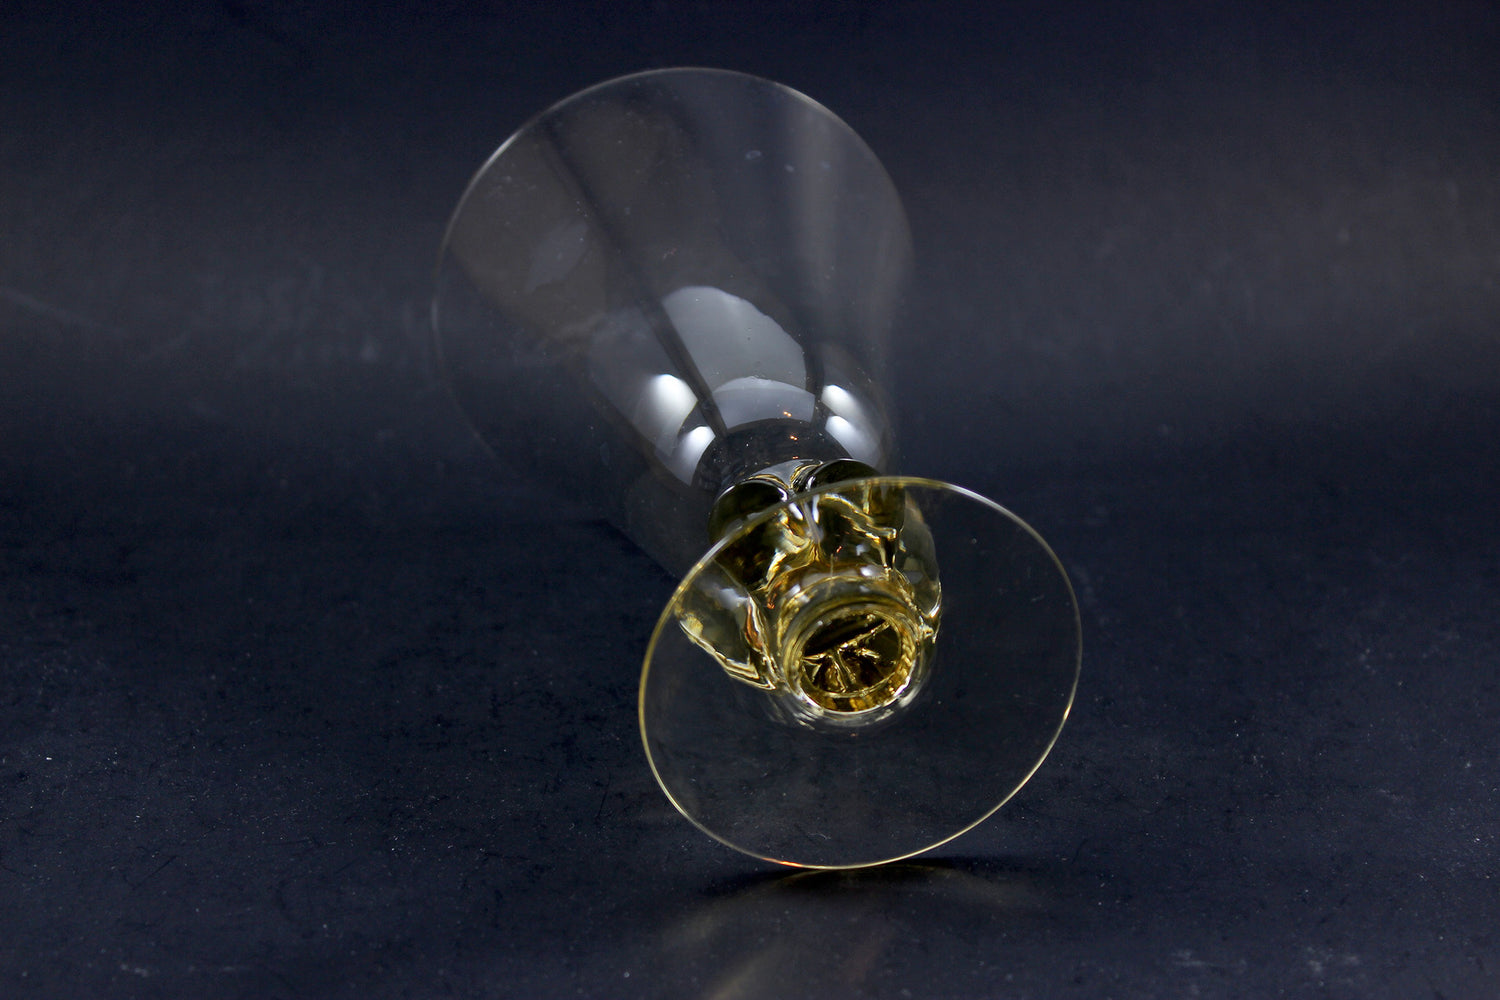 Crystal Stemware, Gulli (Gold) by Swedish